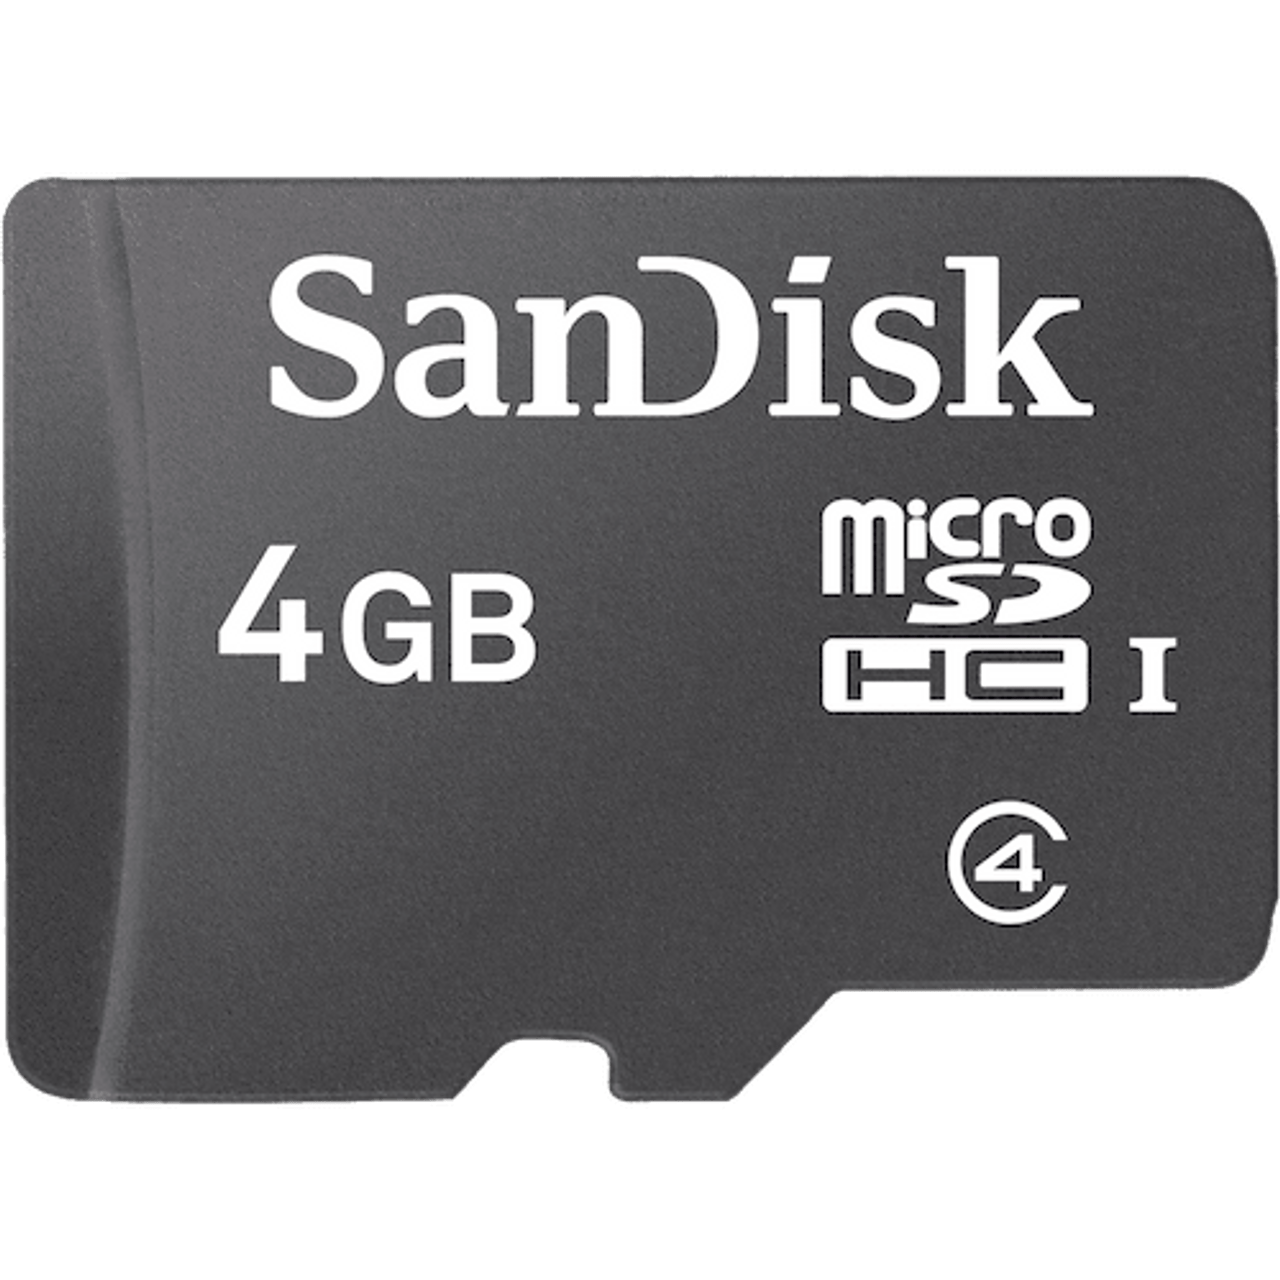 Флешка микро сд цена. Карта памяти SANDISK 32 ГБ. САНДИСК 32 ГБ микро СД. Микро флешка СД на 8 ГБ. Карта памяти SANDISK MICROSDHC Card 32gb class 4.